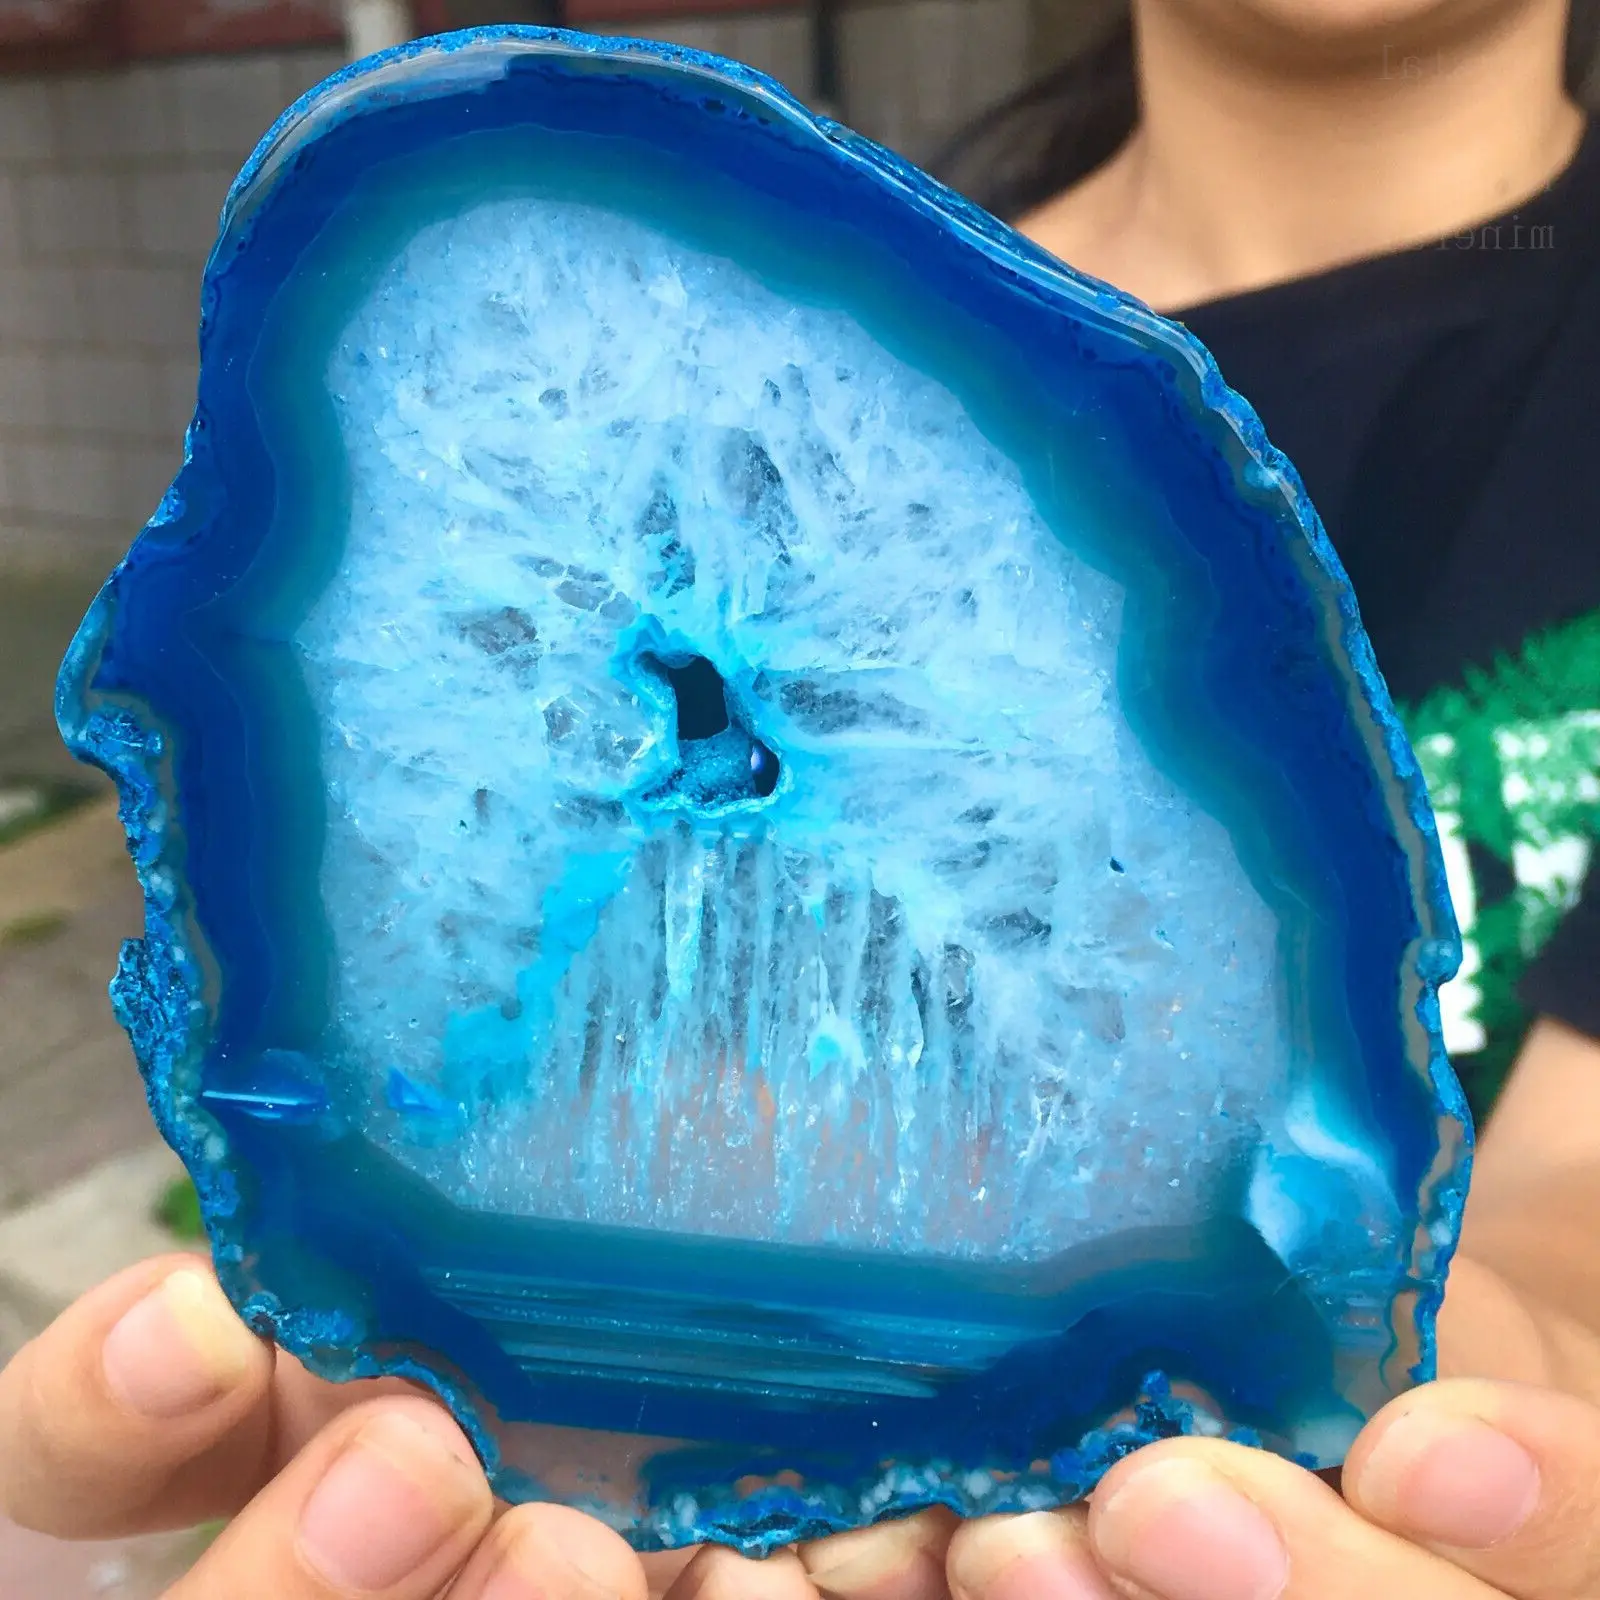 

Natural Blue Agate Slice Up Quartz Crystal Mineral Specimen Reiki Treatment Home Demagnetization Decorative Meditation Ge